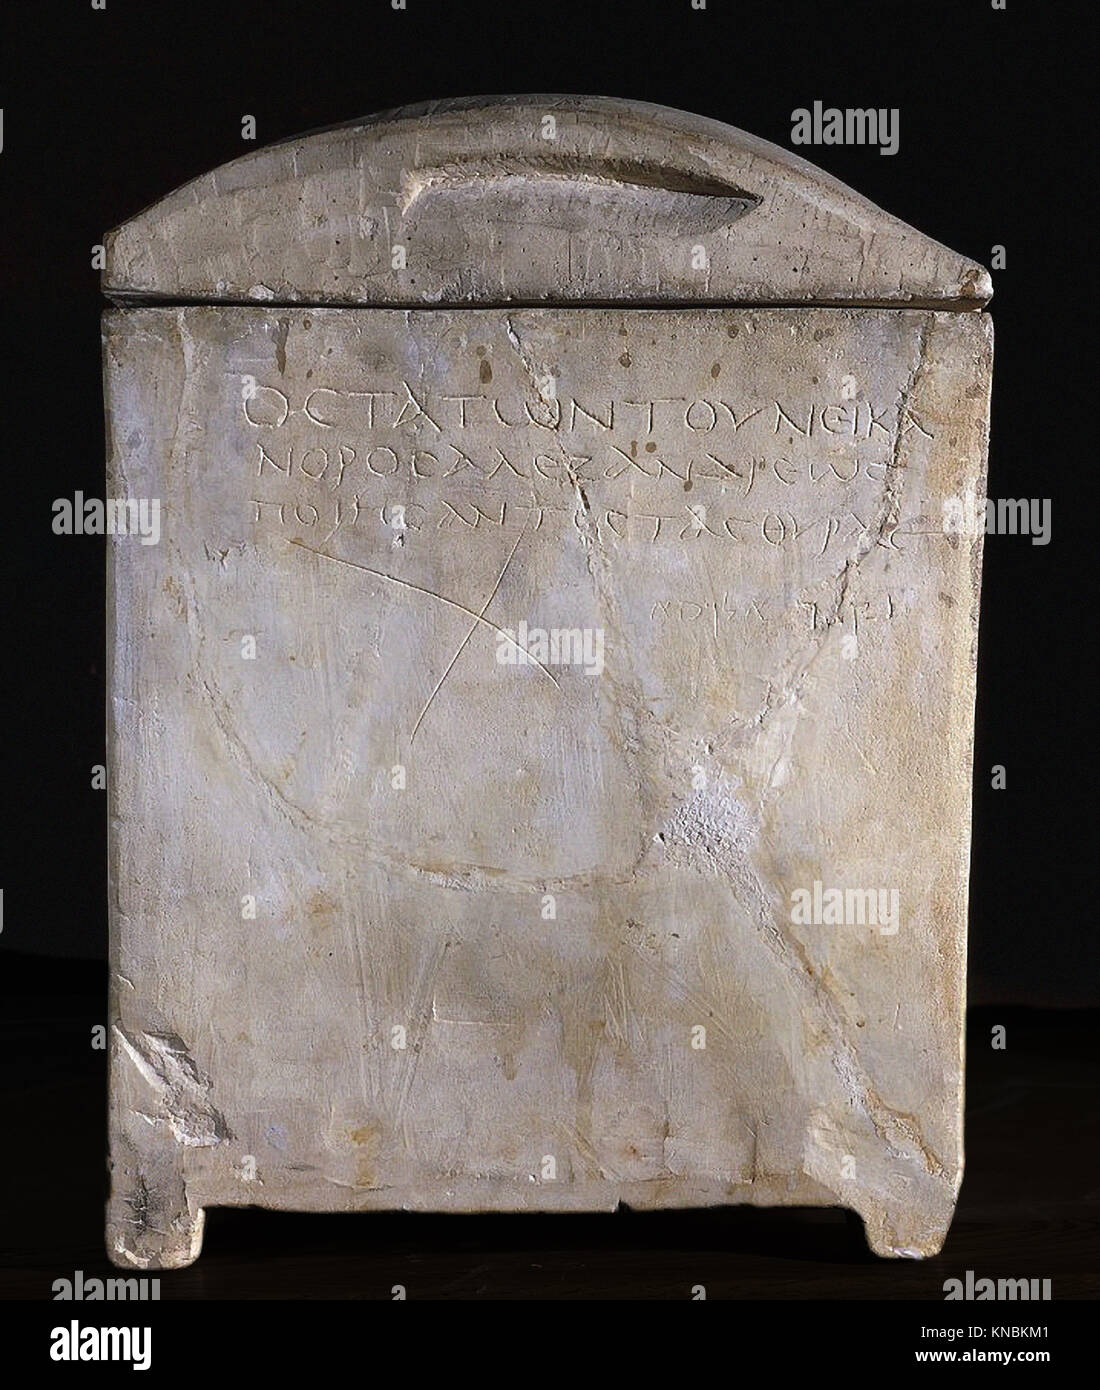 6201. Osario de Nicanor cueva de Mt. Scopus, Jerusalén teniendo una inscripción griega leyendo: "Los huesos de la familia de Nicanor el alejandrino WH Foto de stock